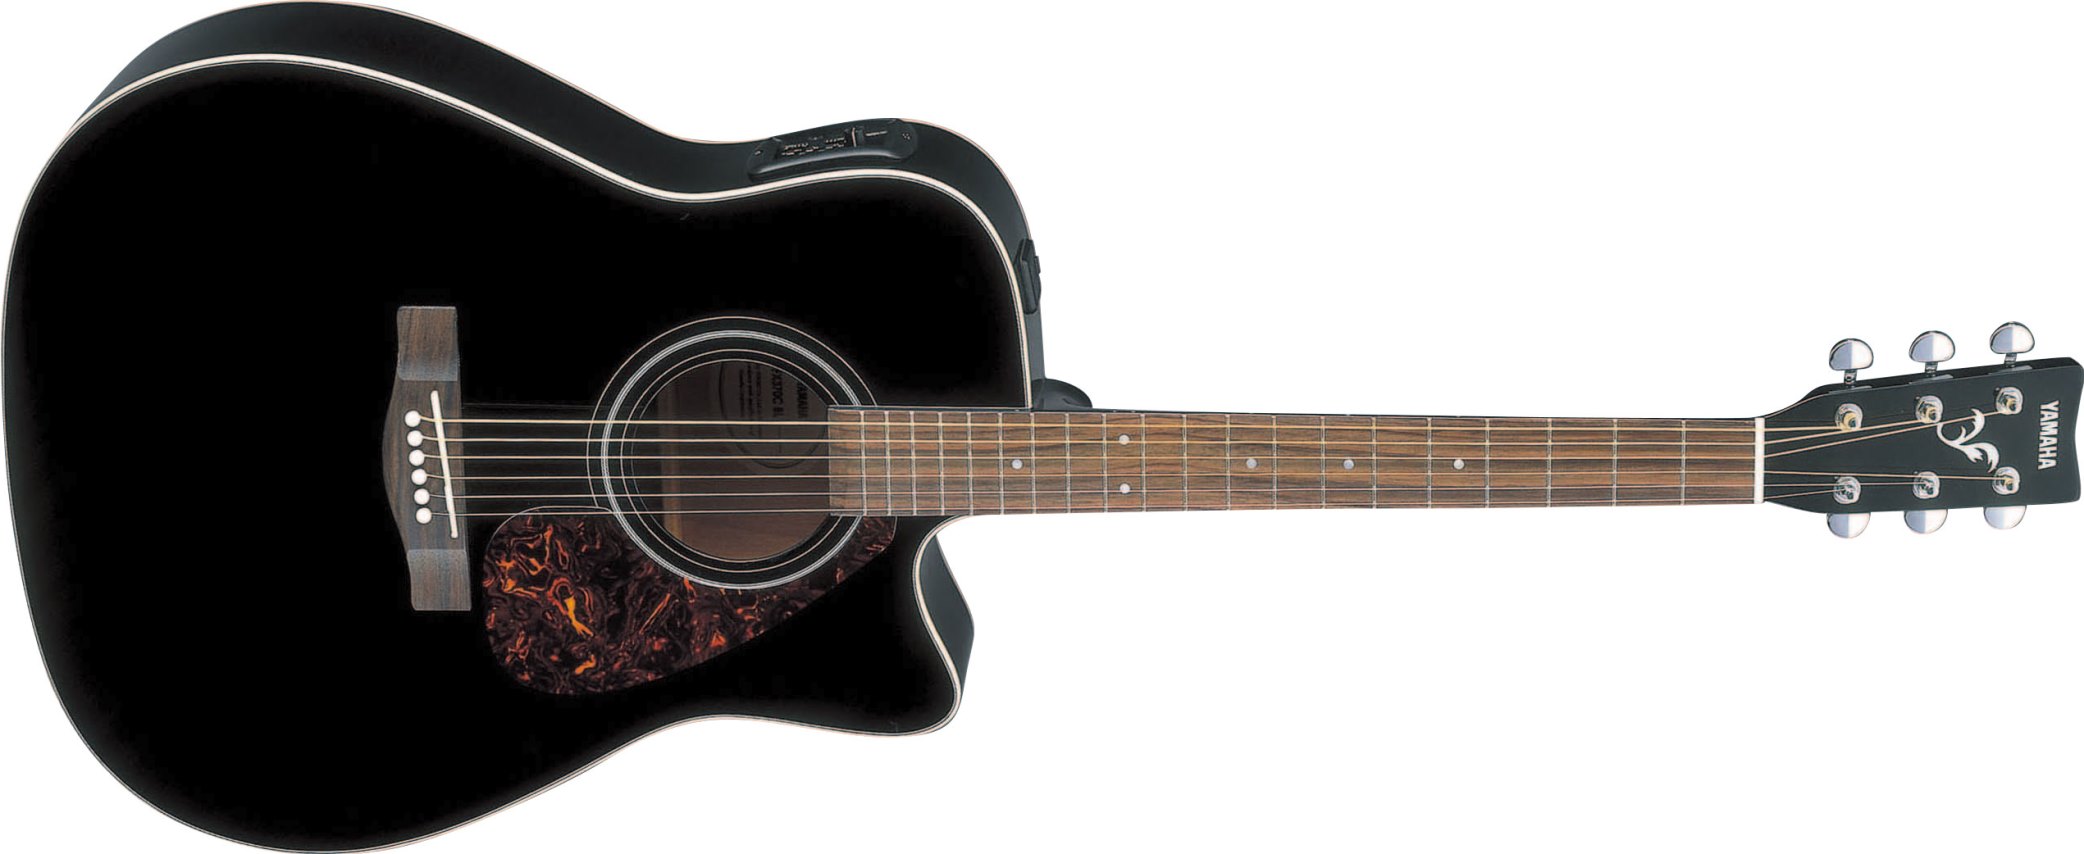 Yamaha Fx370c - Black - Electro acoustic guitar - Variation 1